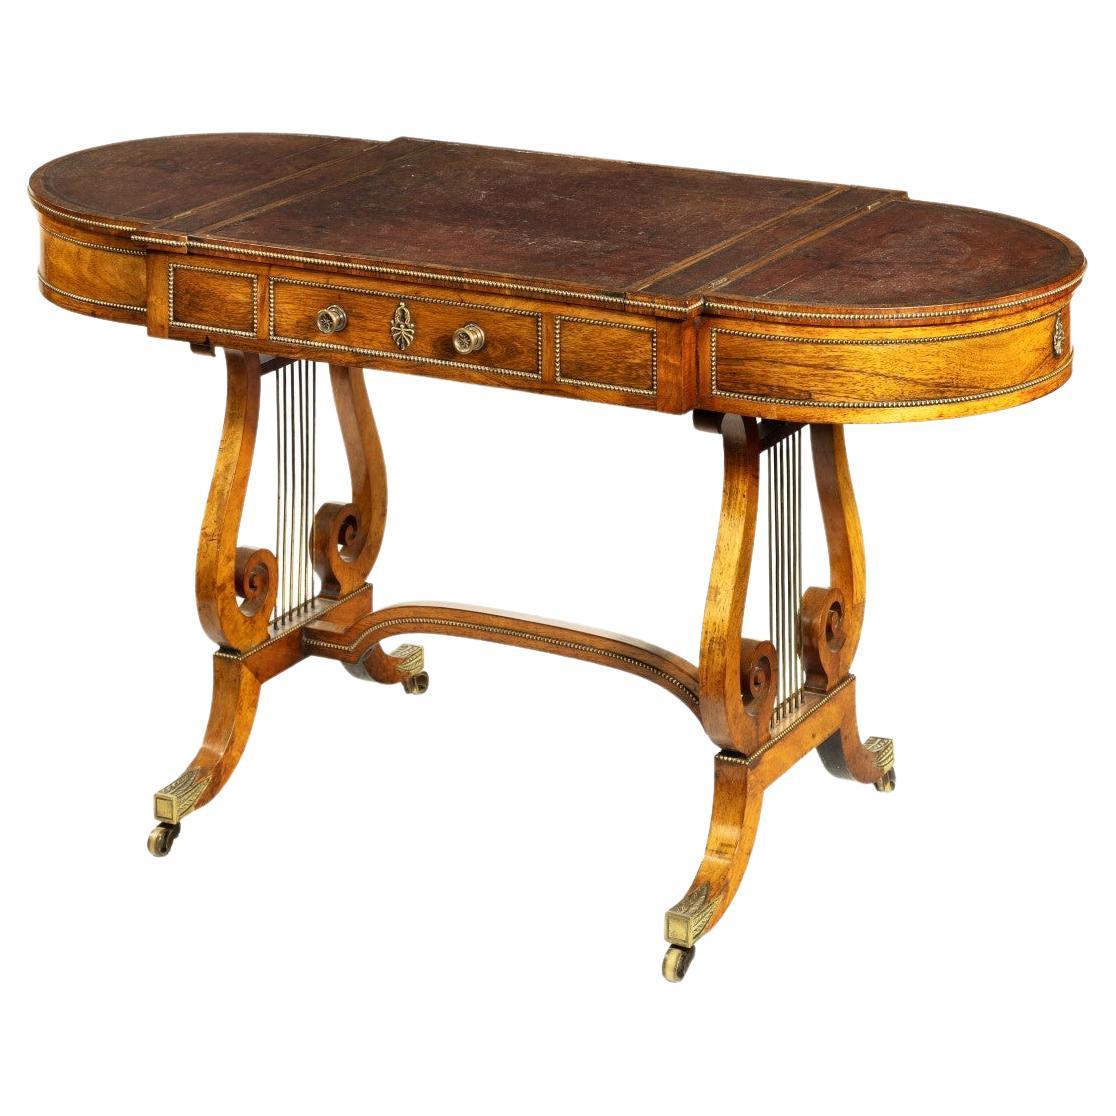 Table de jeu sur canapé en bois de rose de la période Régence attribuée à Gillows of Lancaster